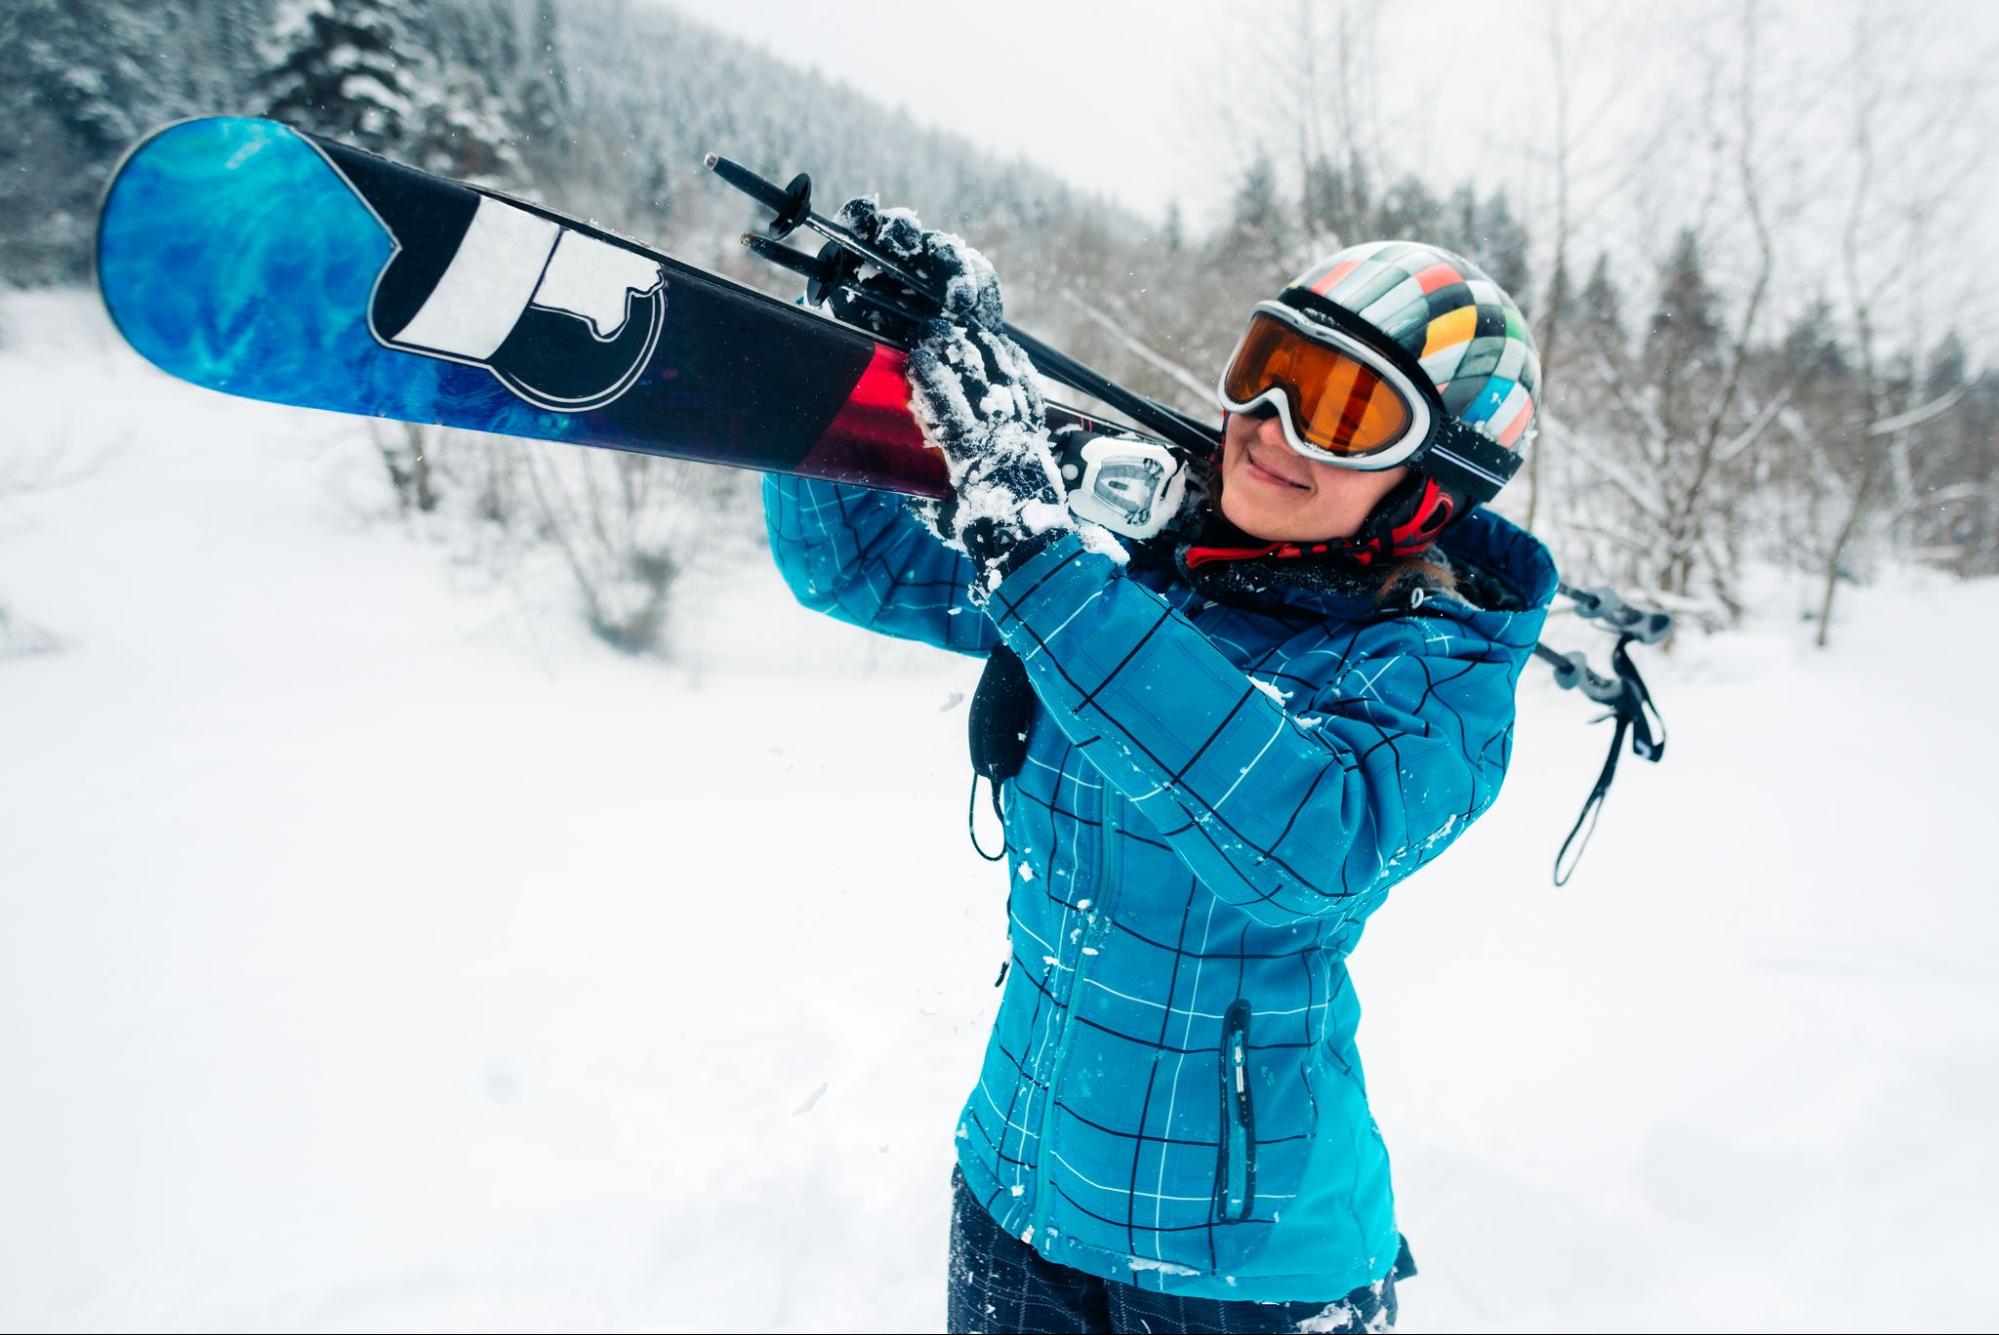 Increíble truco para esquiar sin pantalones en la nieve!